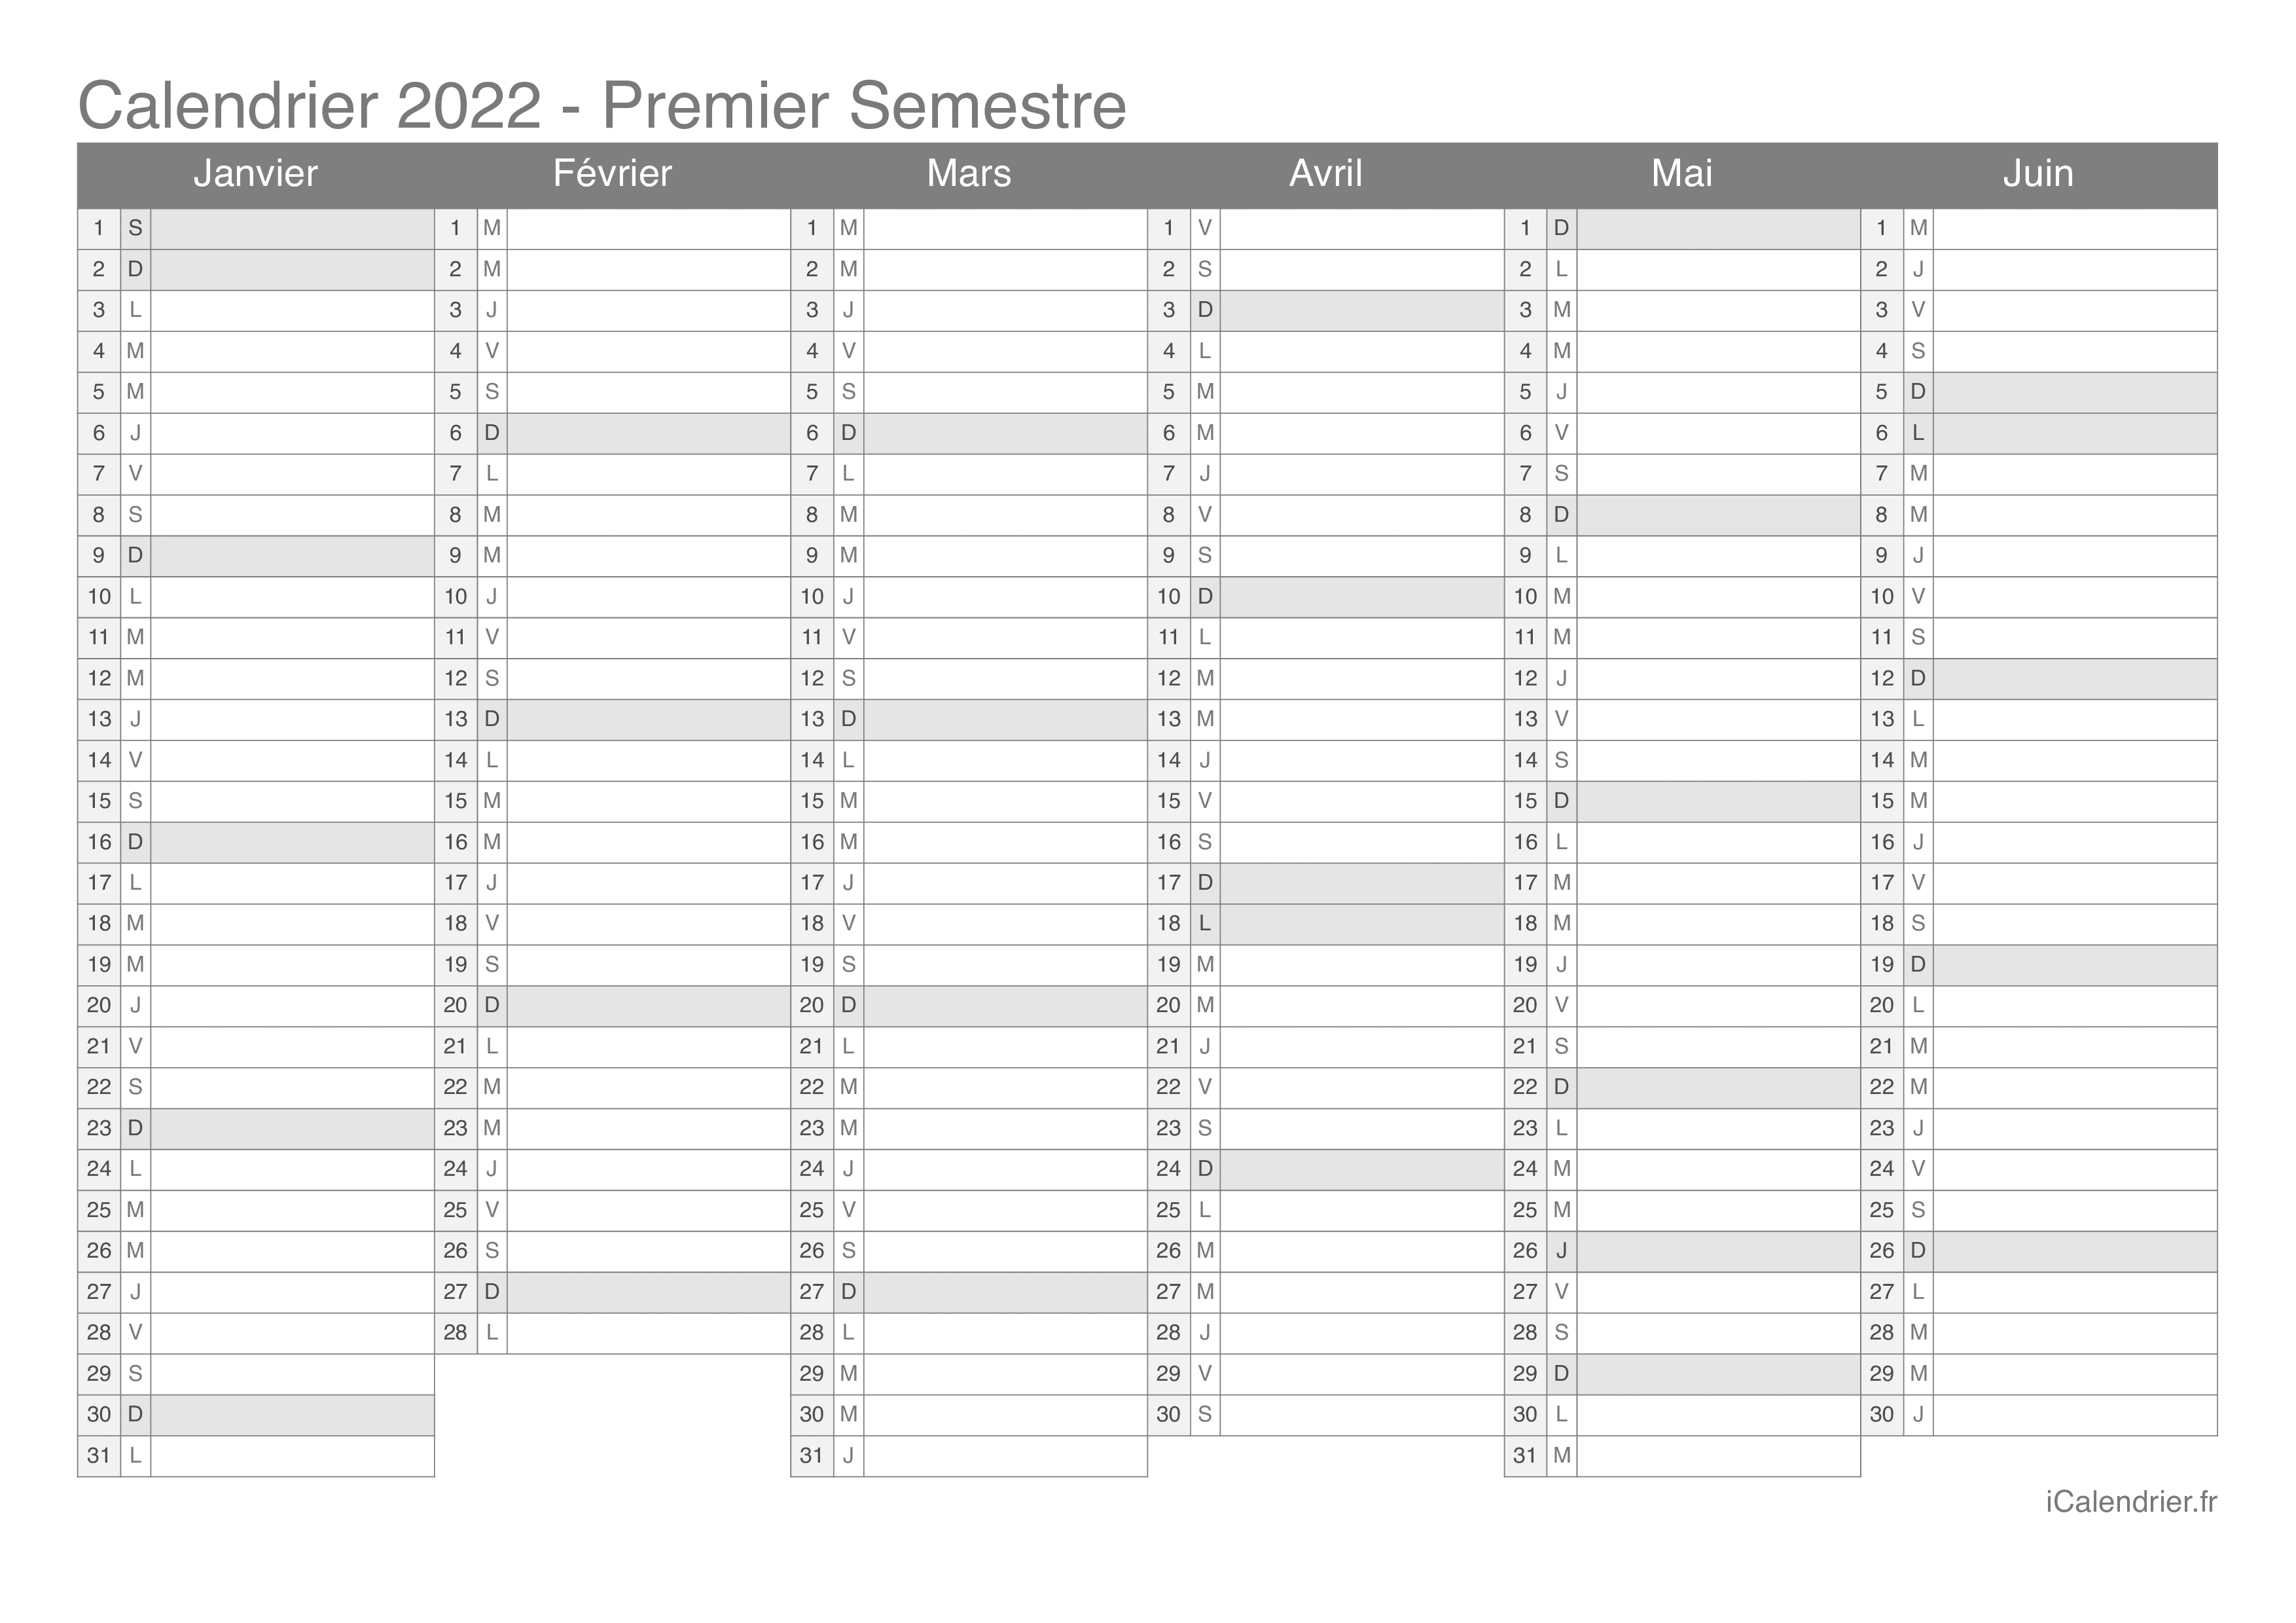 Calendrier Premier Trimestre 2022 Calendrier 2022 à imprimer PDF et Excel   iCalendrier